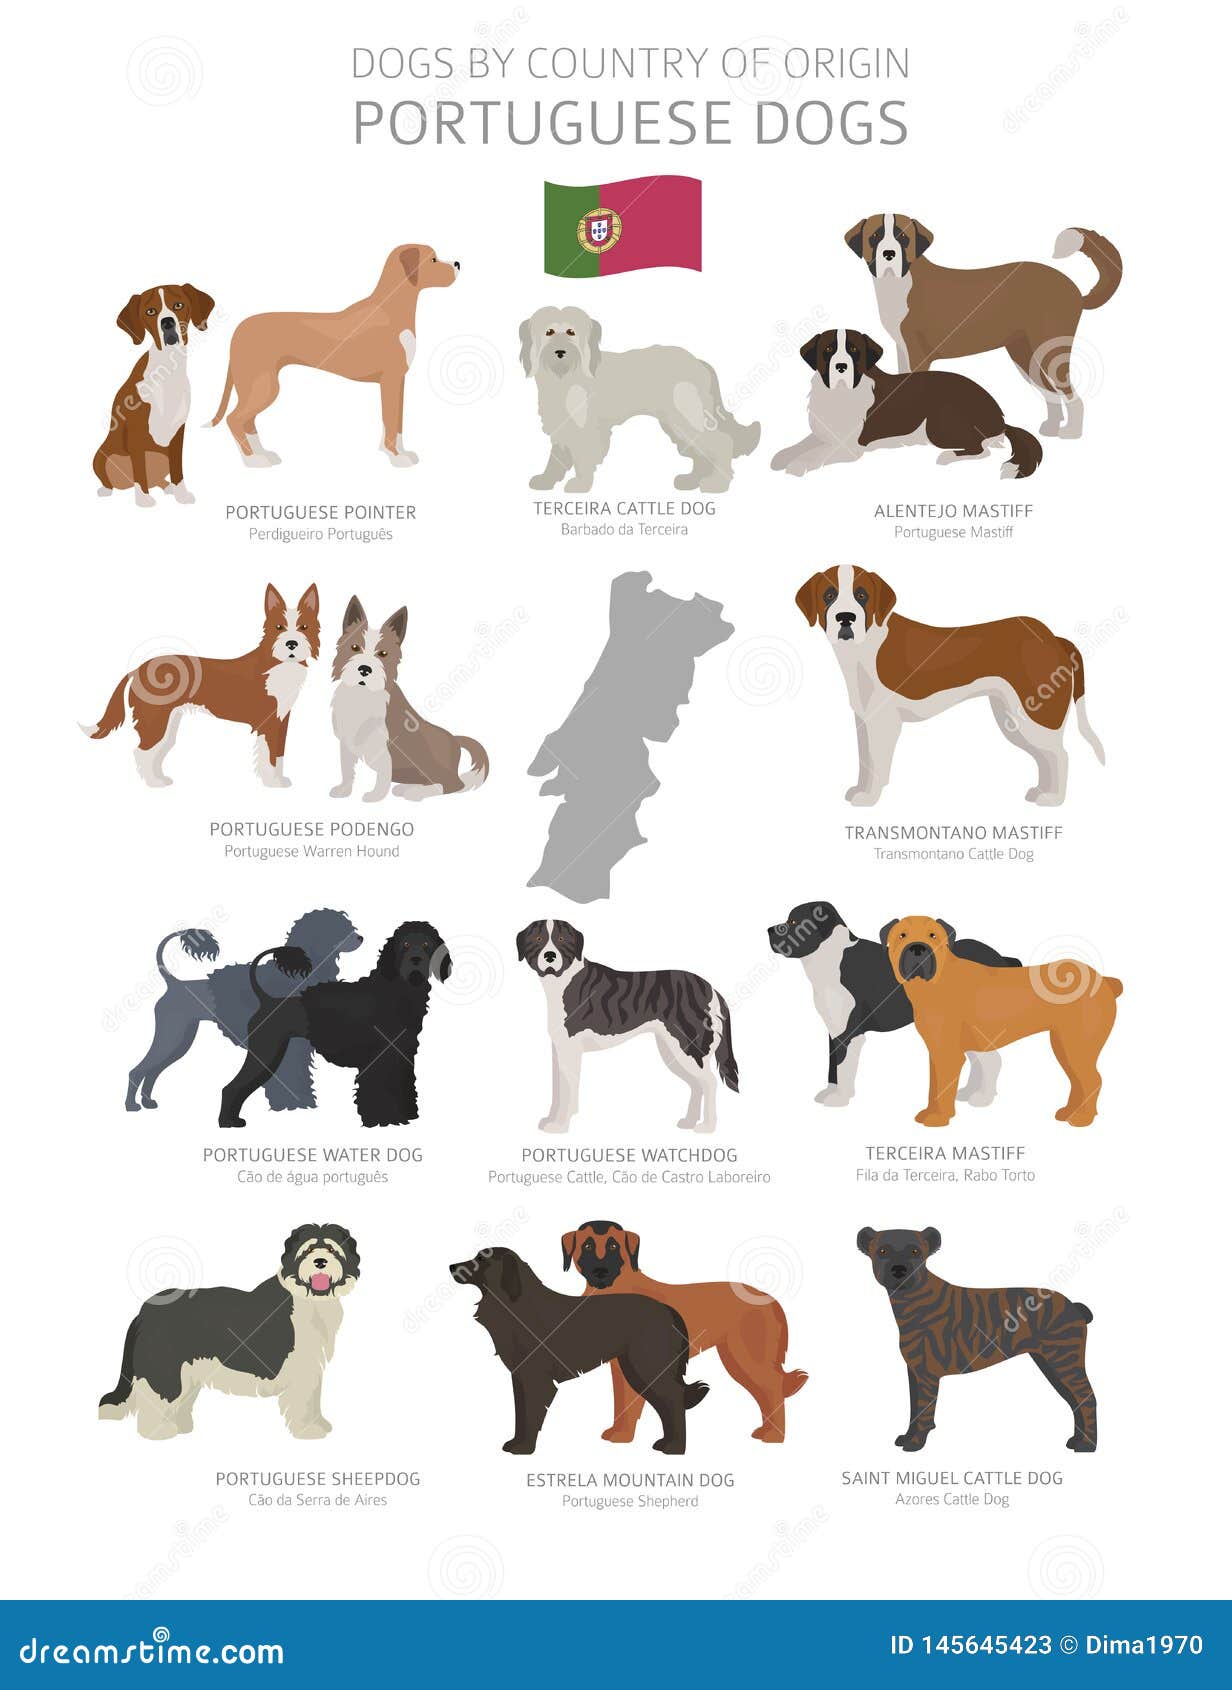 Национальность собаки. Породы собак по странам. Породы собак по странам происхождения. Породы собак происхождение страны. Страна собак.